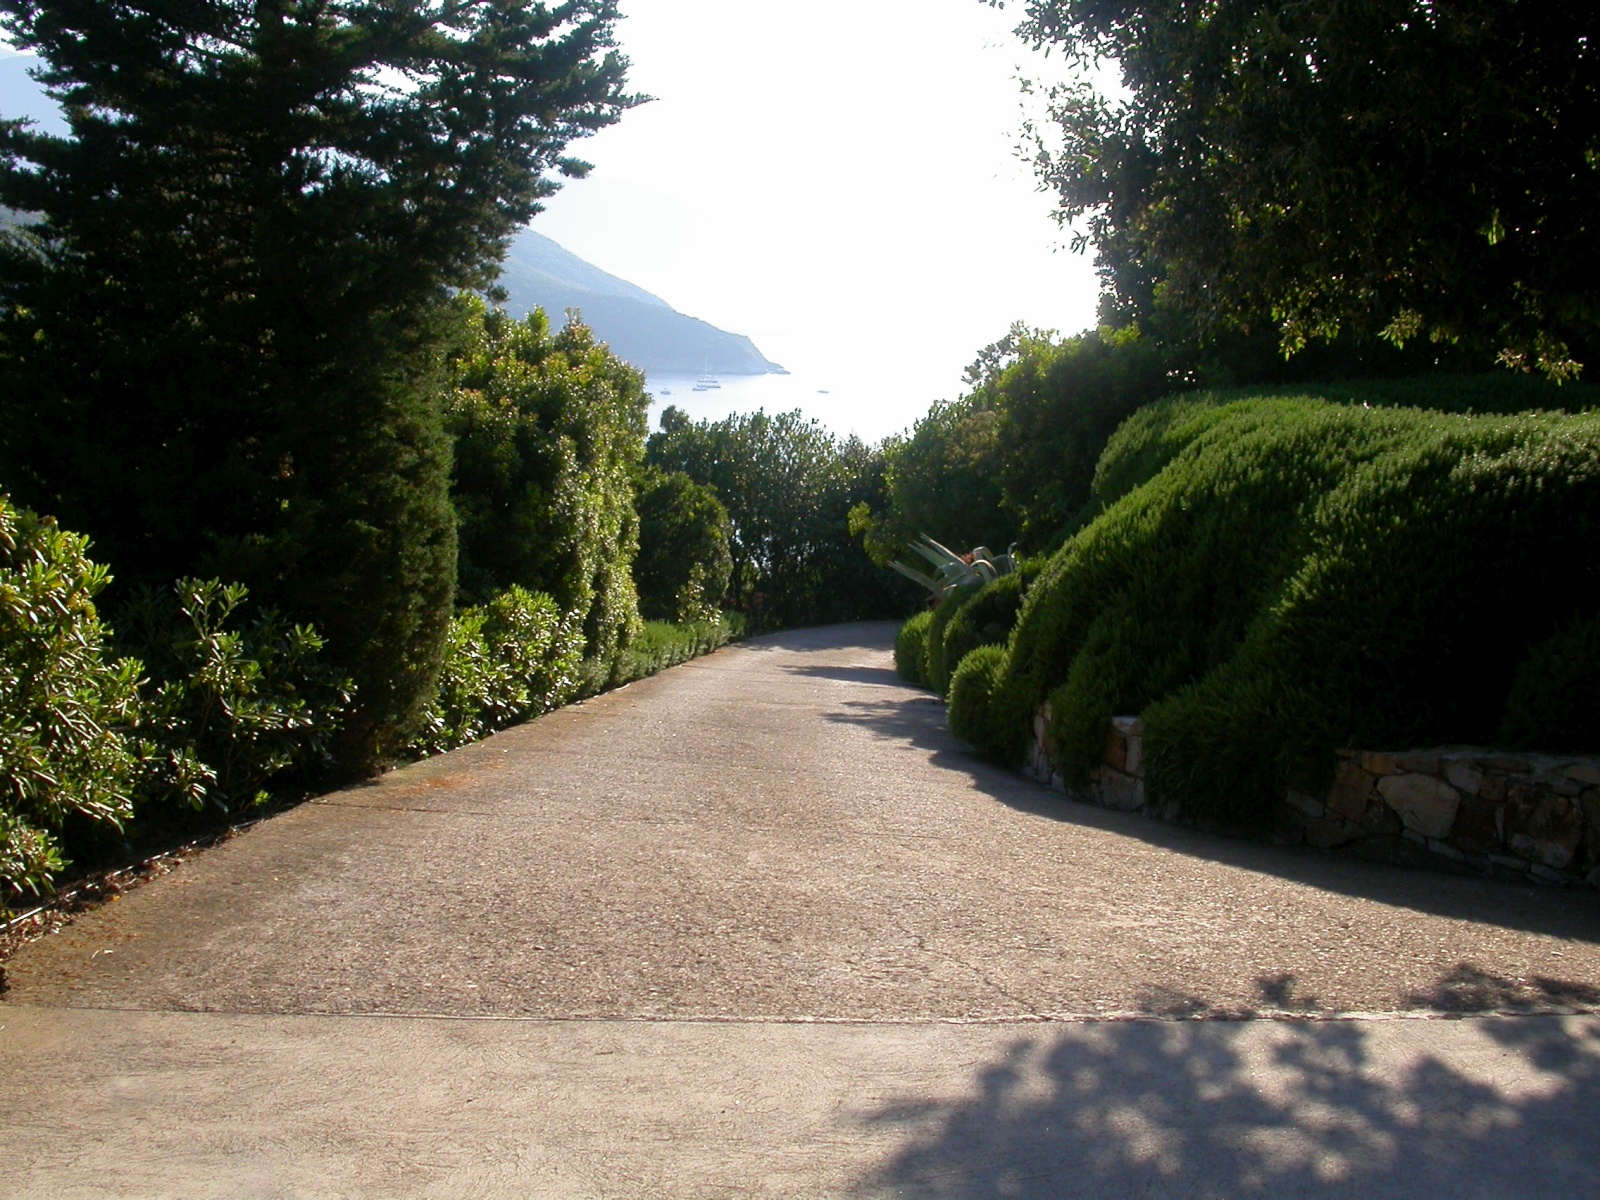 Villa Manobianco